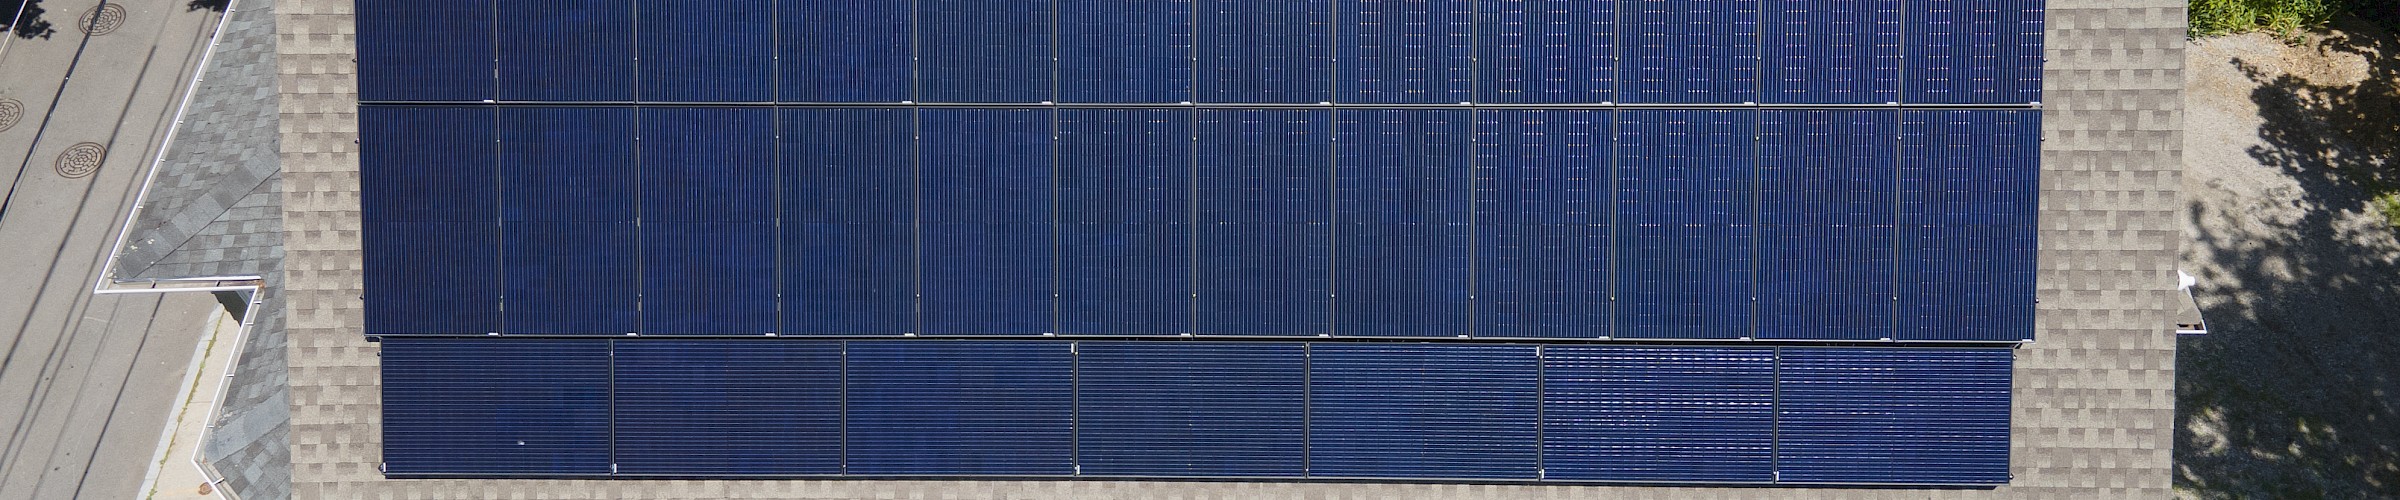 9.92 kW Solar Installation in Waltham, MA